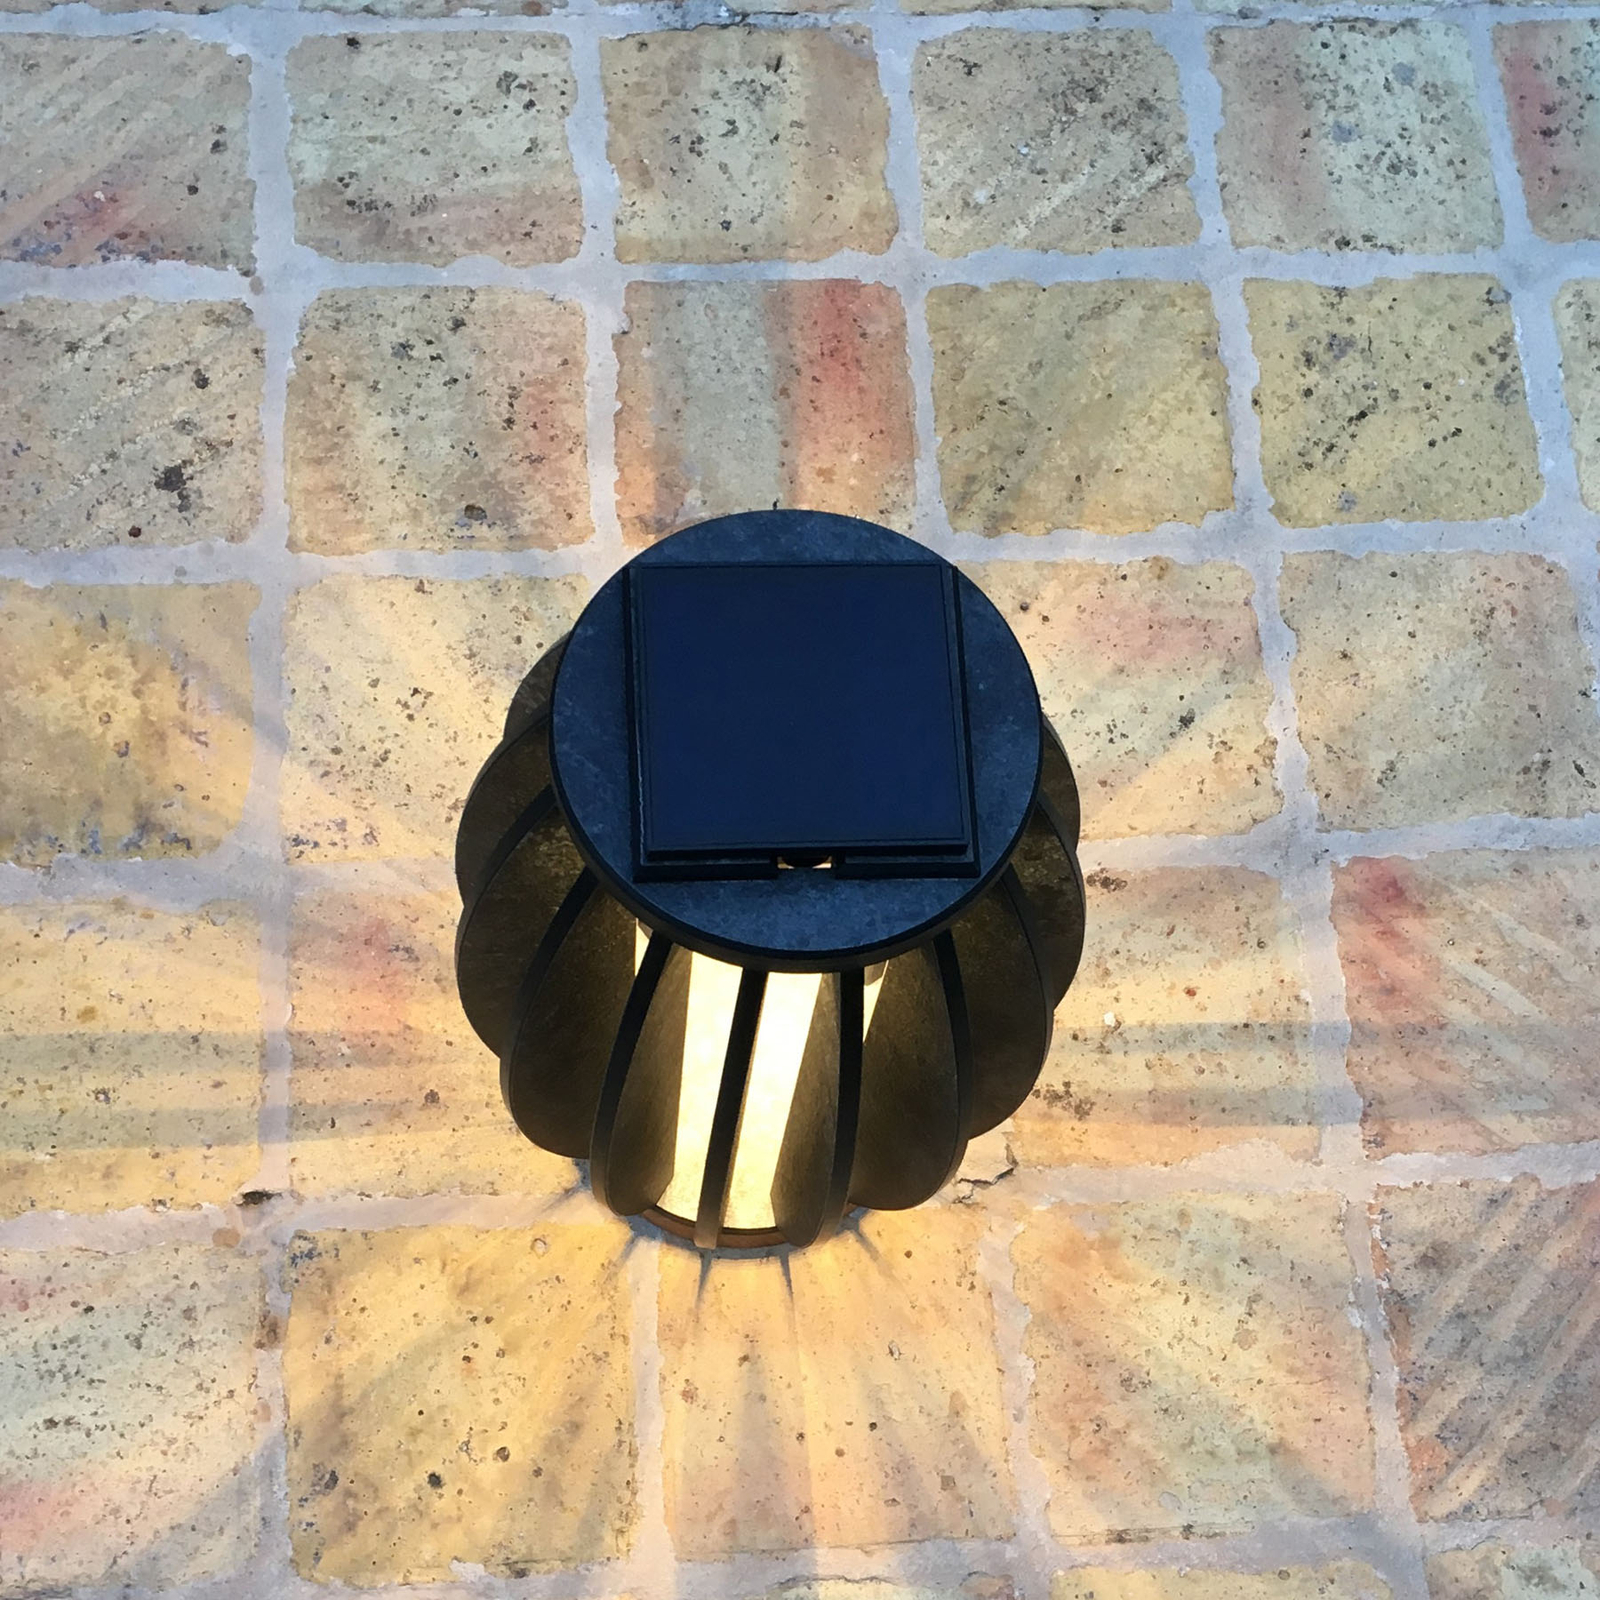 Pastek LED solar light made of teak wood, sensor